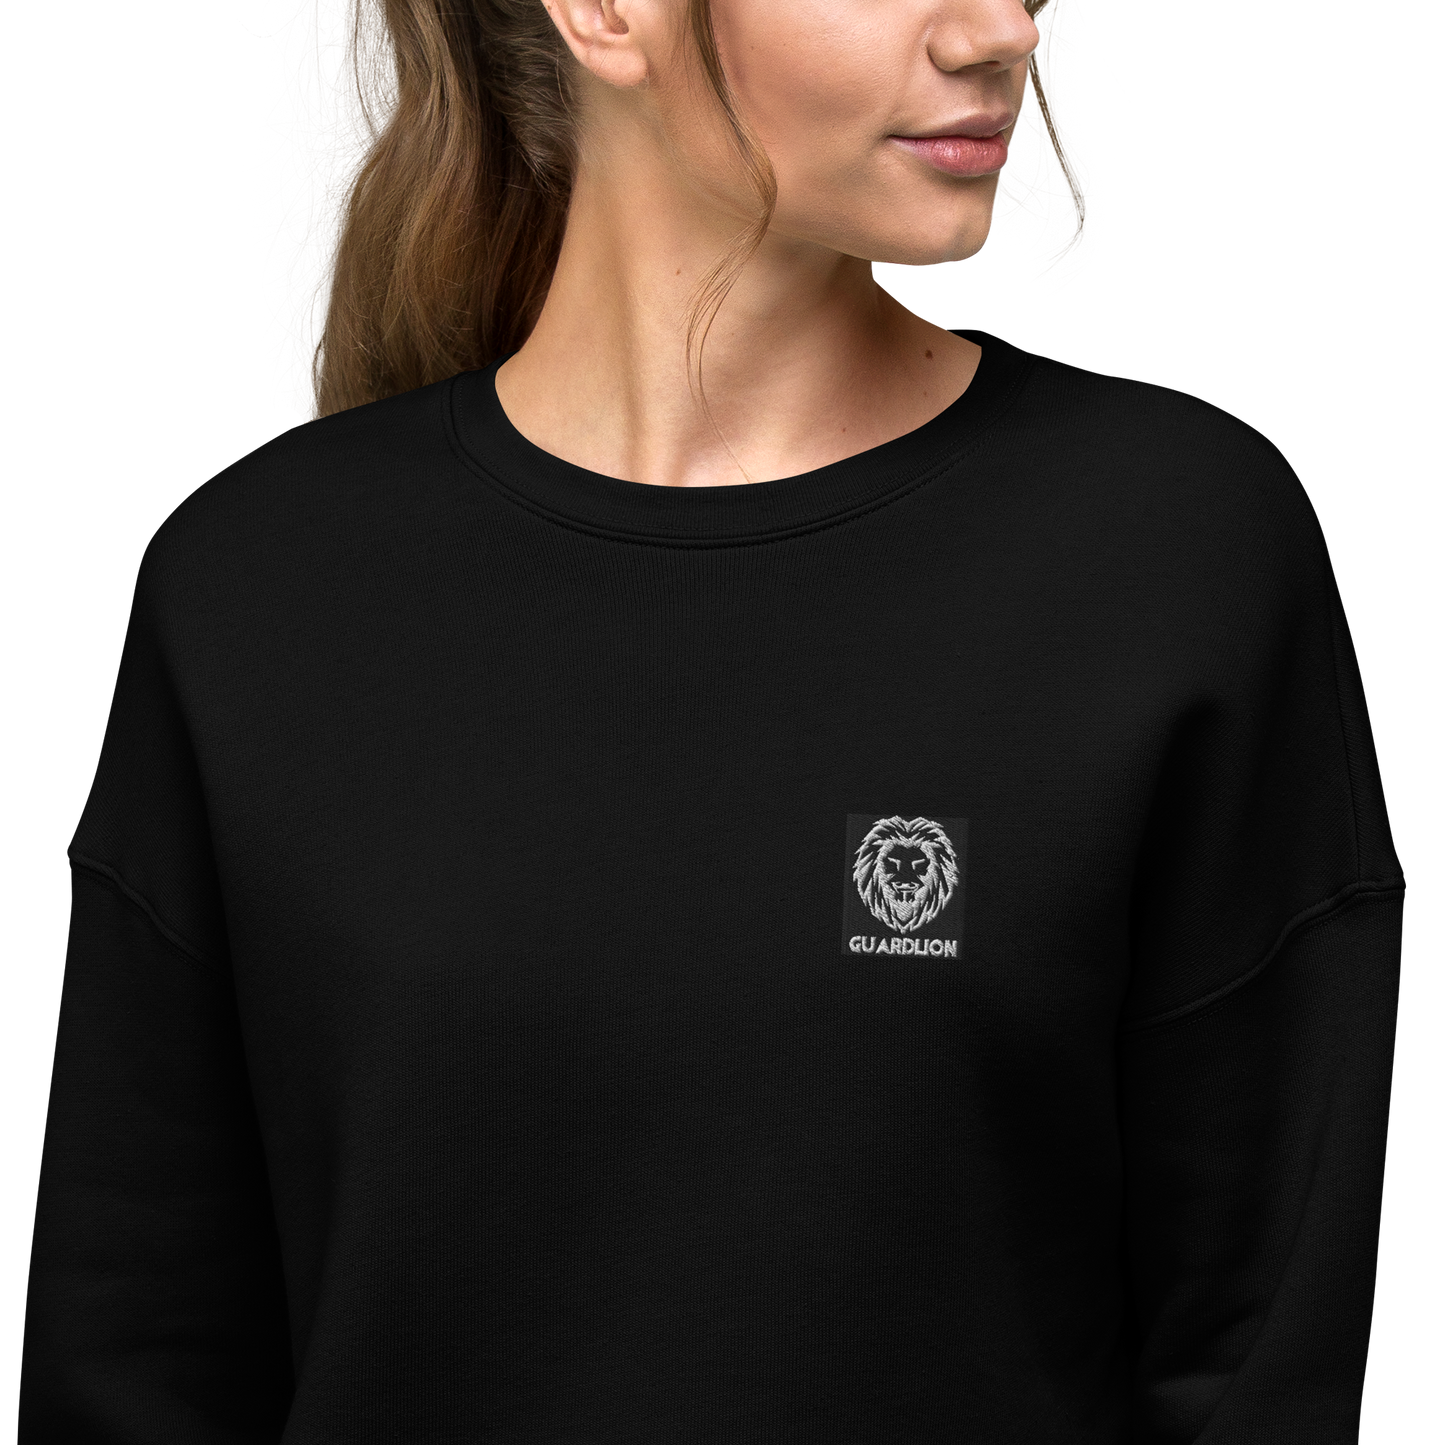 Crop Sweatshirt | Bella + Canvas 7503 embroidered